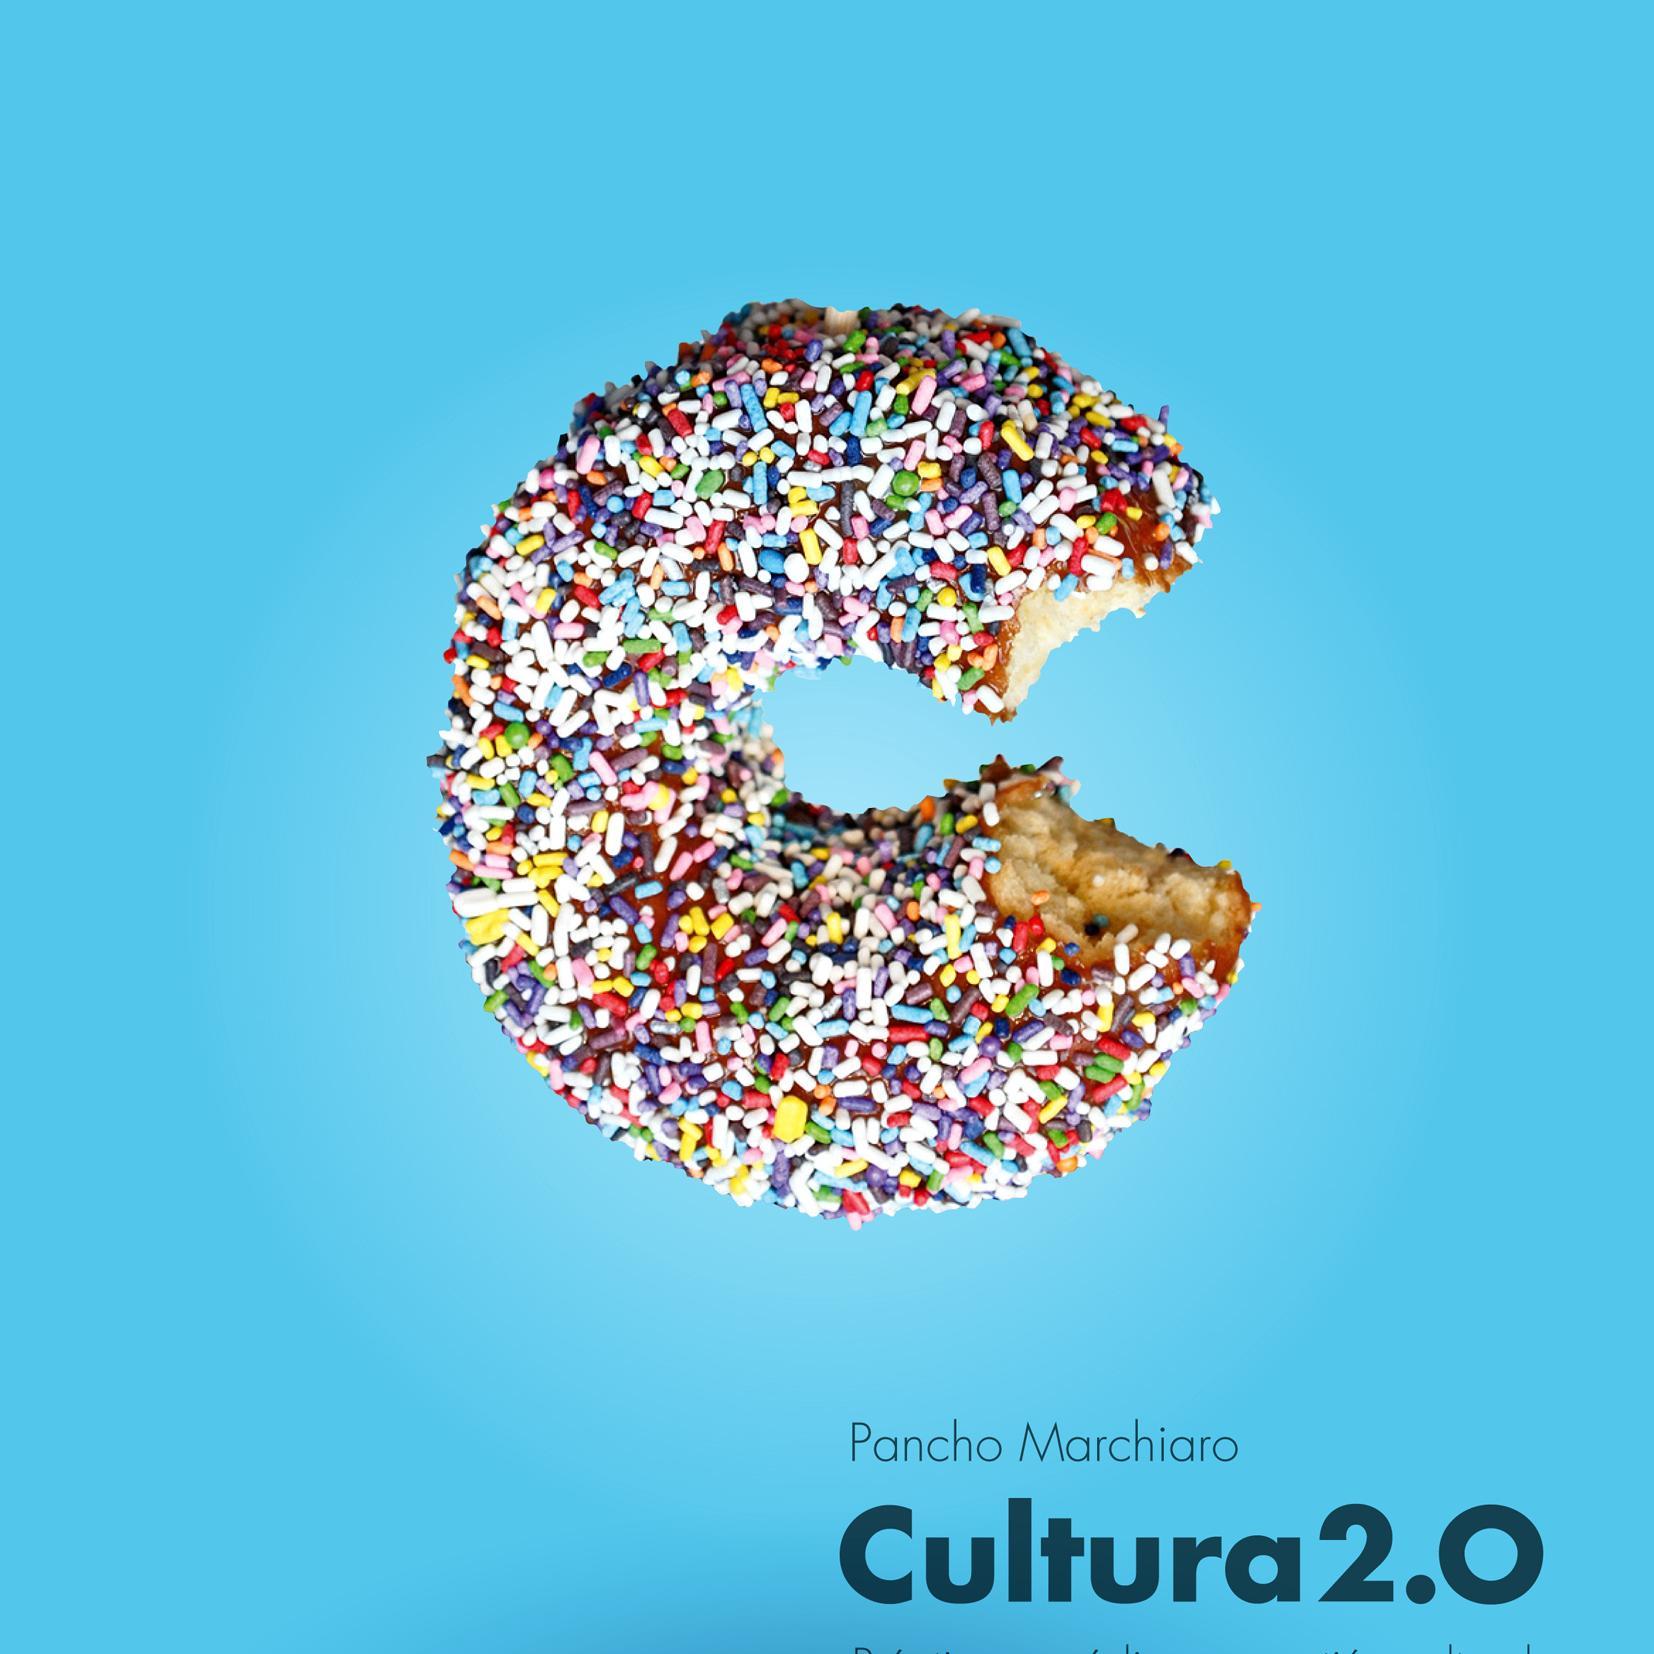 Espacio de reflexión sobre la Cultura 2.0, sus discursos y prácticas